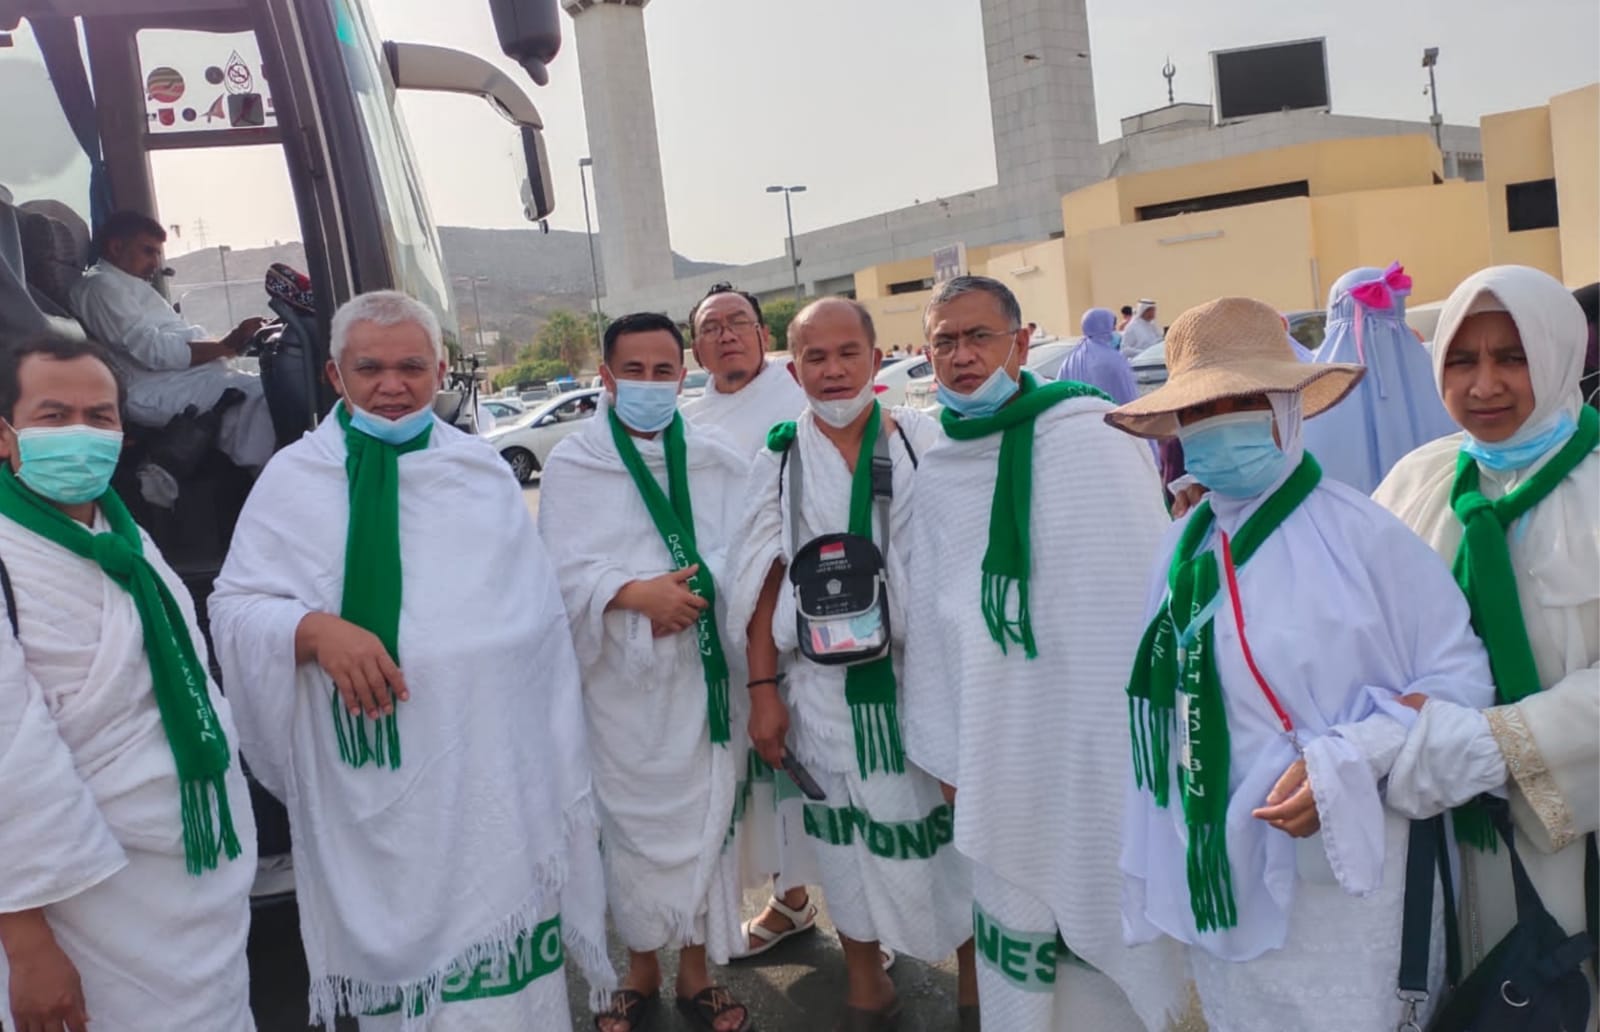 20 Juli, Jemaah Haji Asal Lambar Dijadwalkan Tiba di Asrama Haji Bandarlampung 